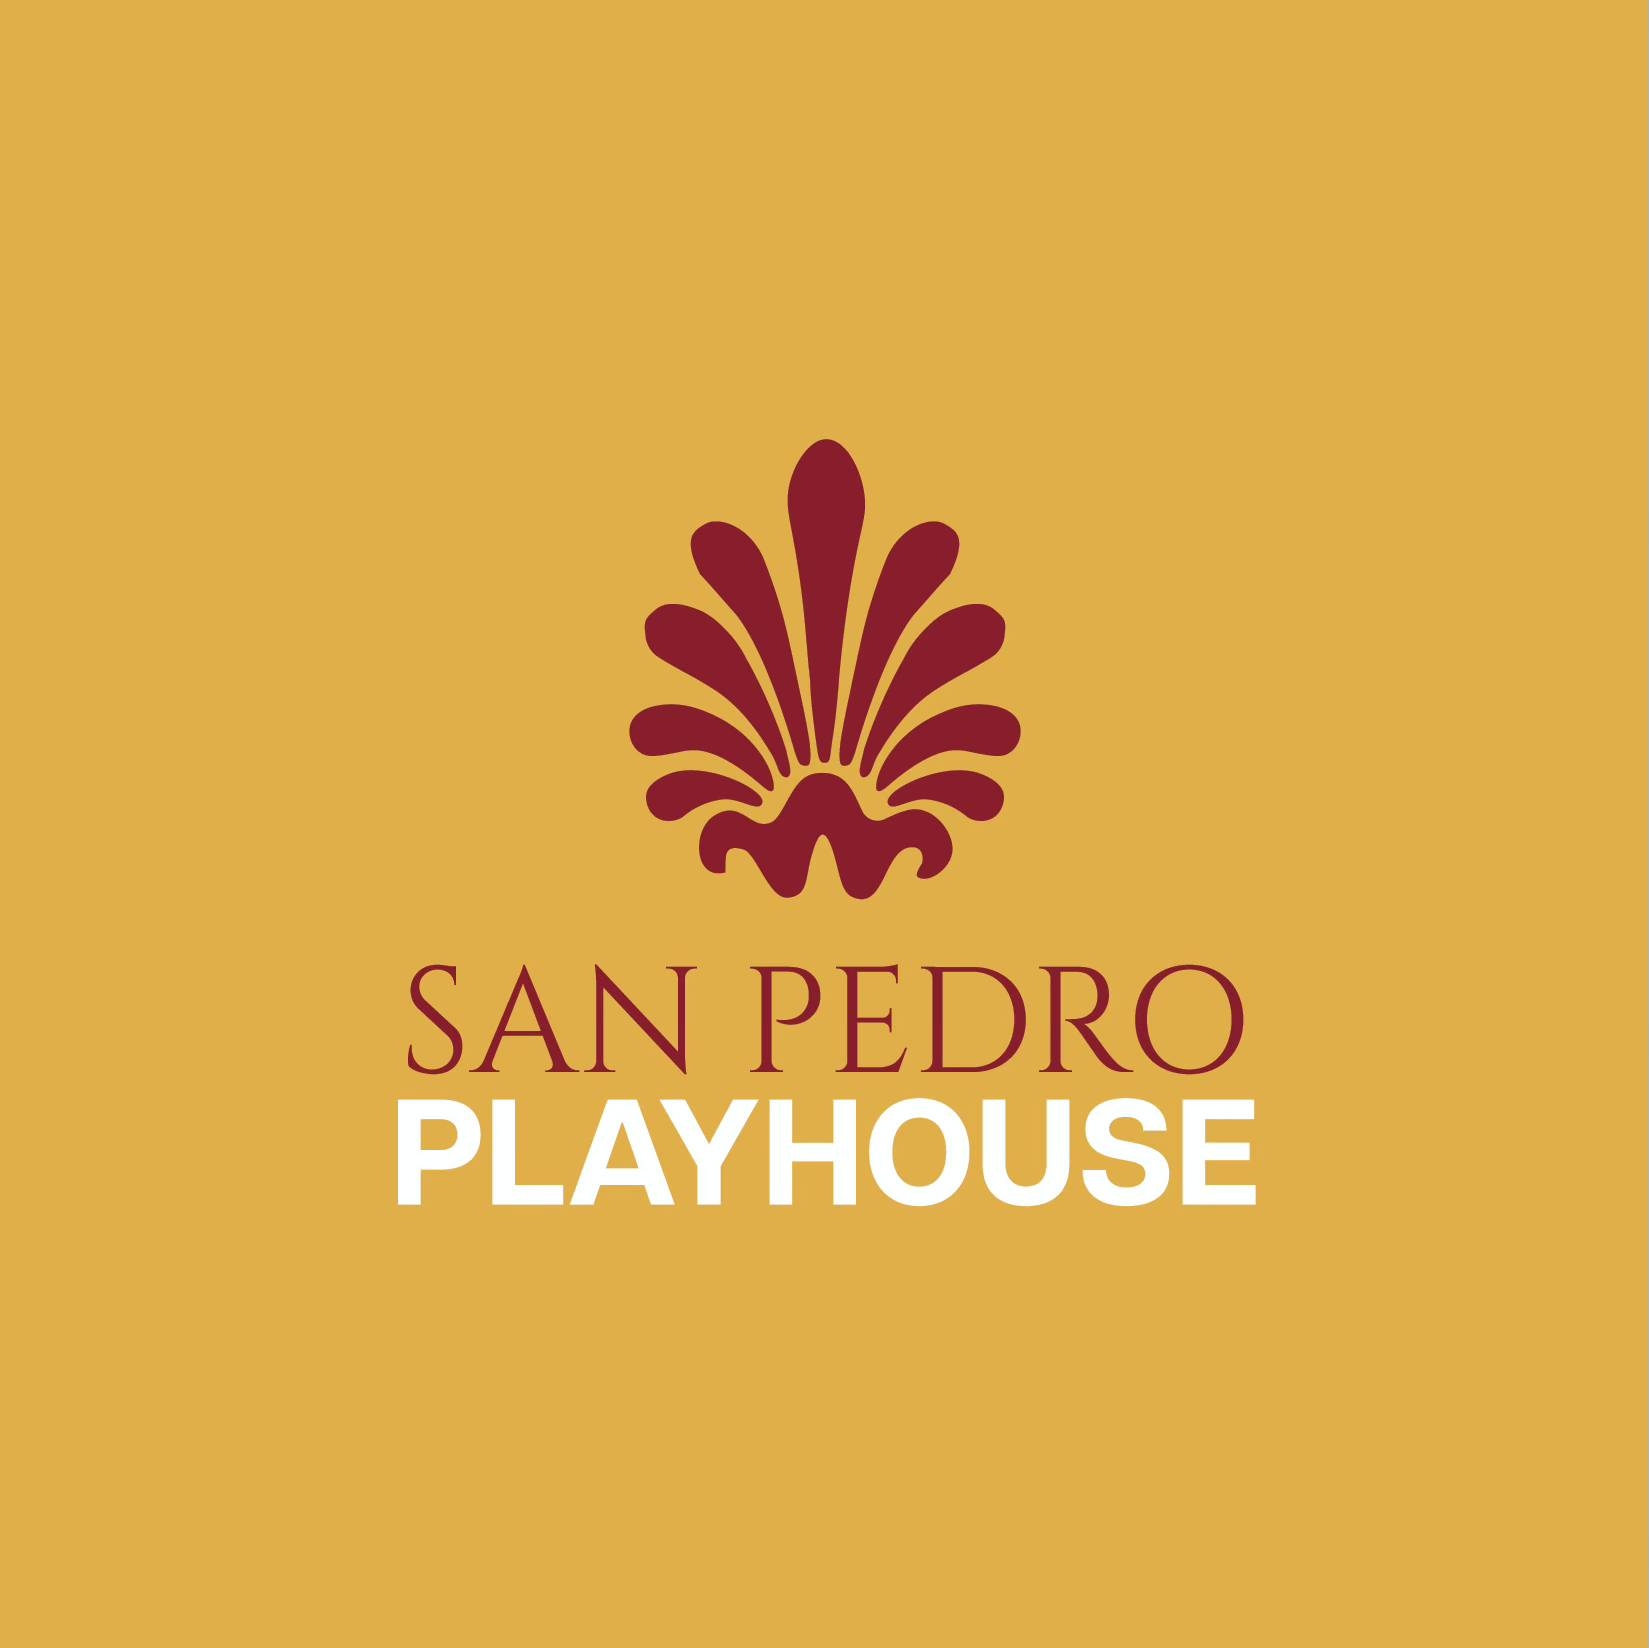 San Pedro Playhouse